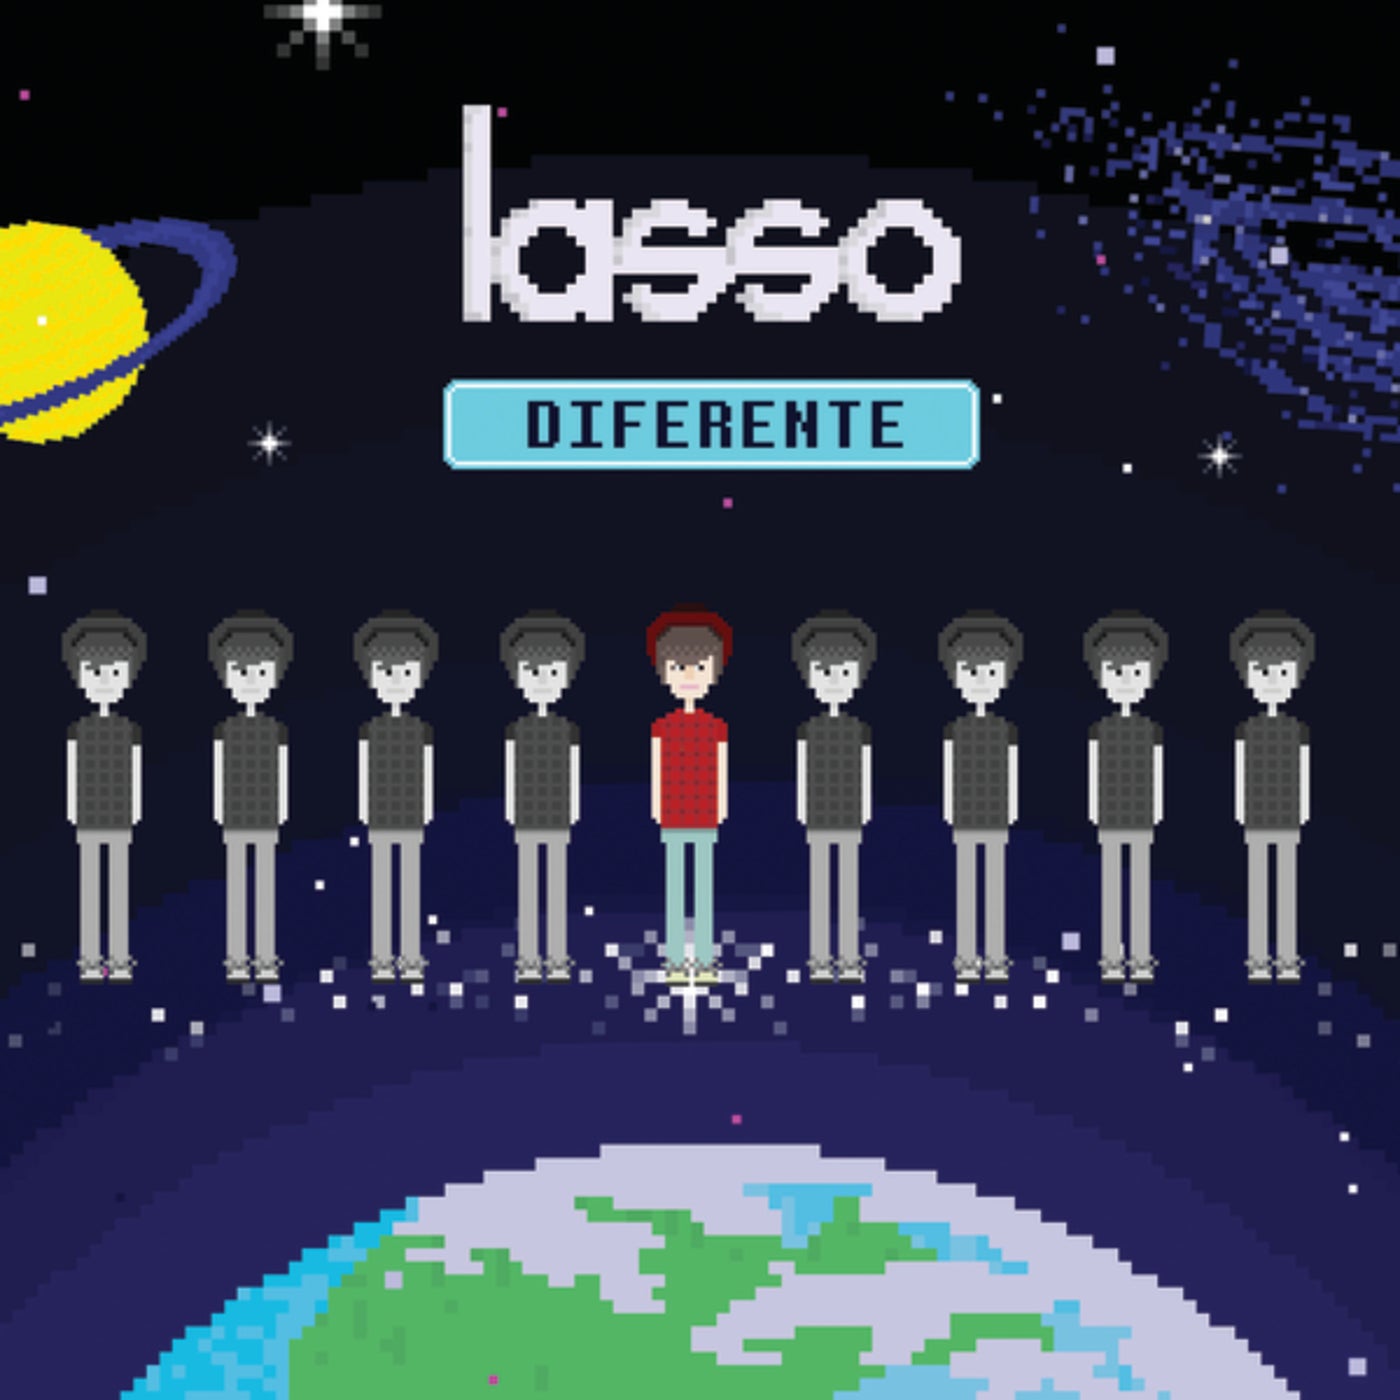 Beret, Lasso - Si no fuera por ti - playlist by Topsify Spain